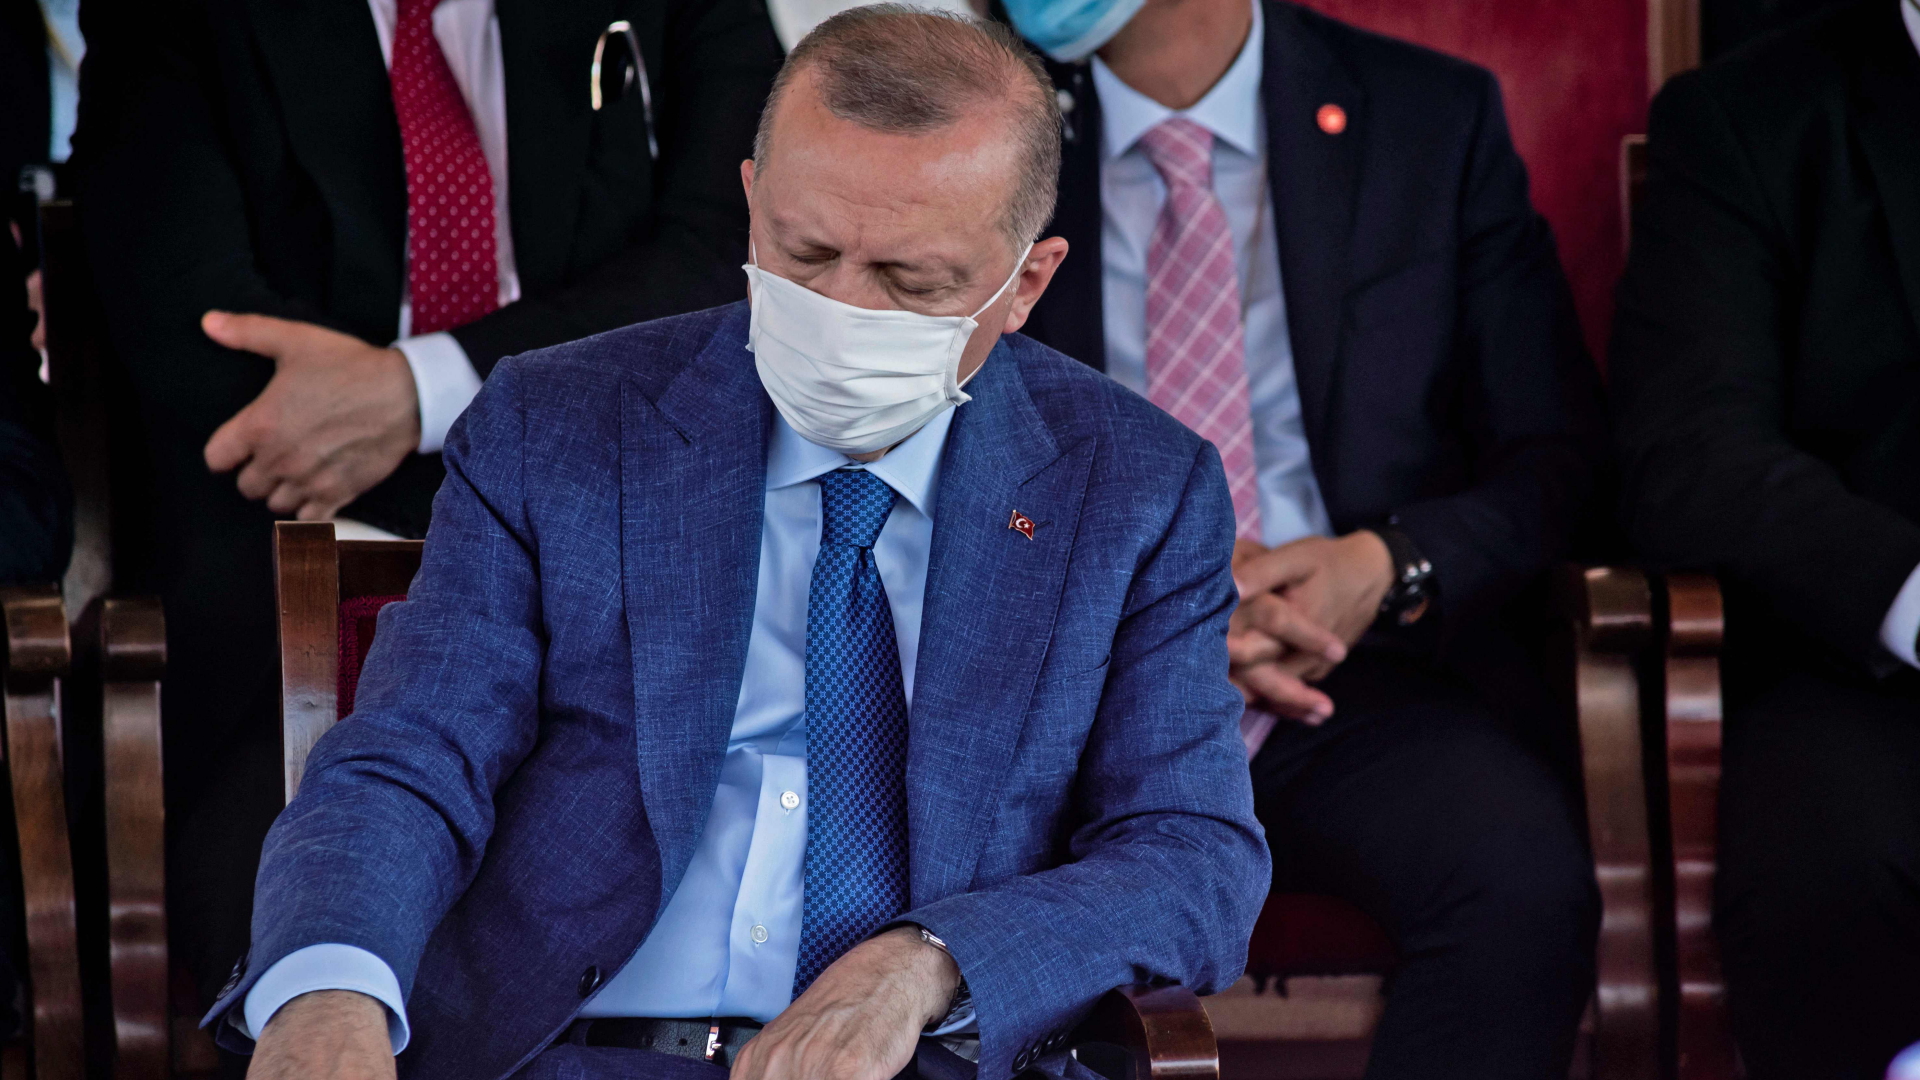 Während einer Militärparade in Nikosia (Nord-Zypern) am 20. Juli 2021 nickt der türkische Präsident Erdogan kurz ein. | AFP